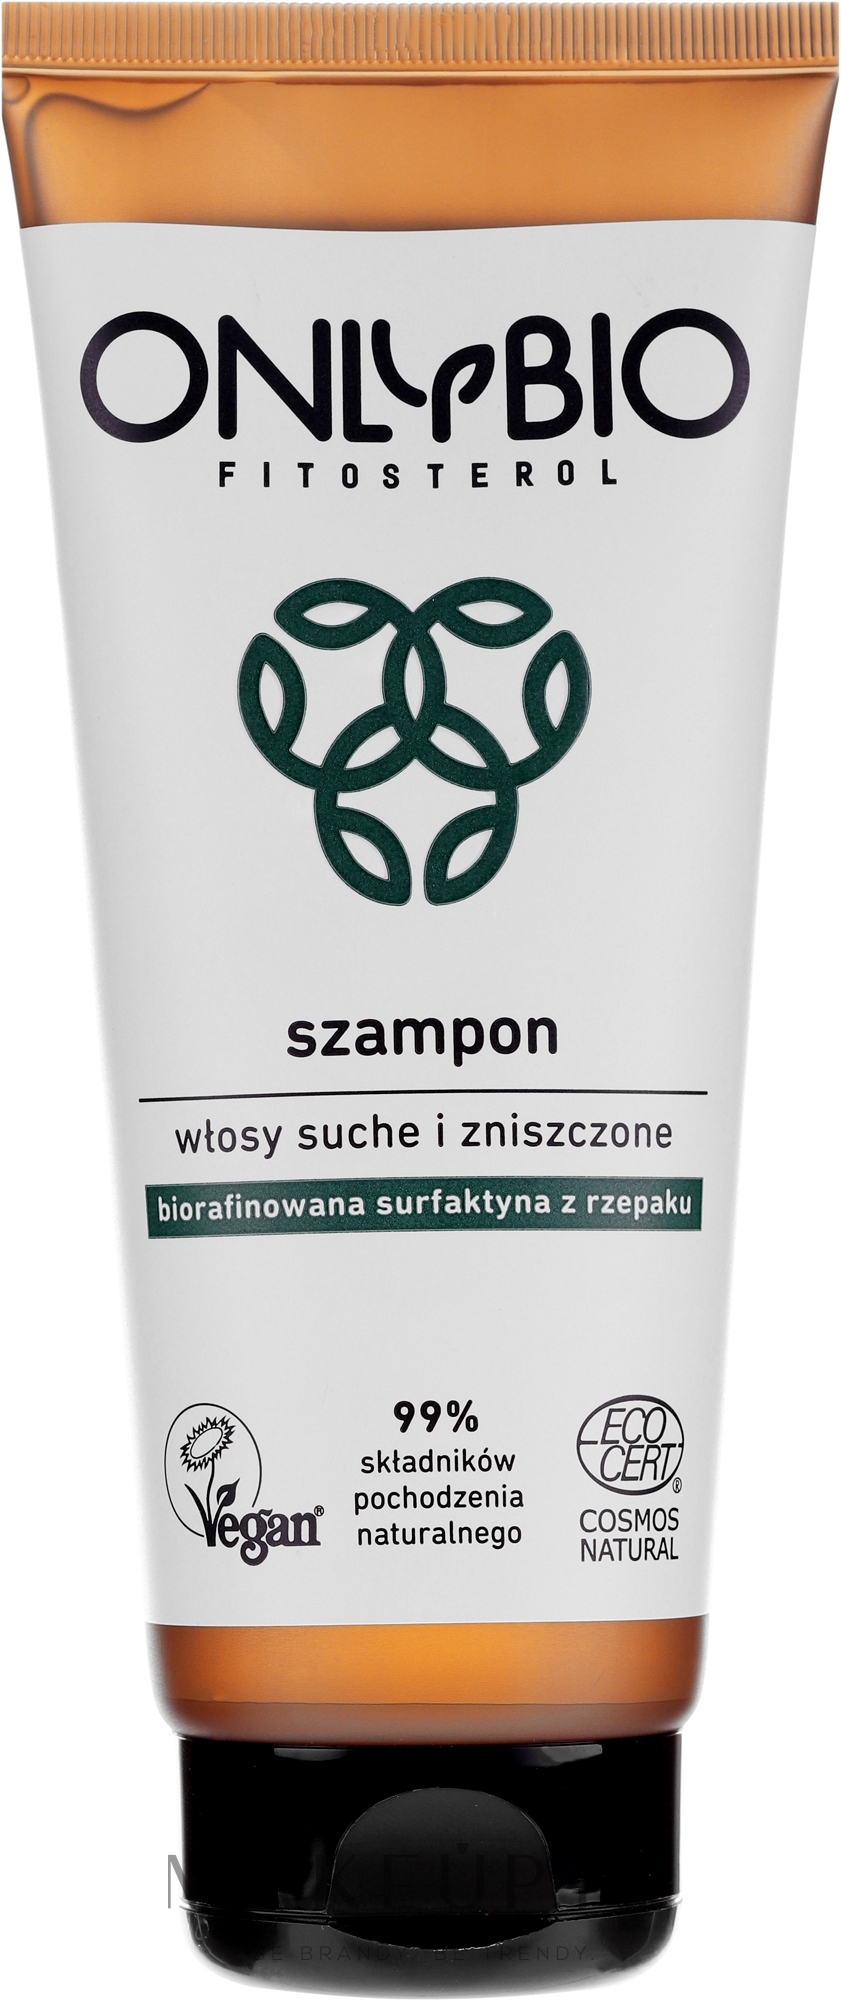 only bio miceralny szampon wizaz